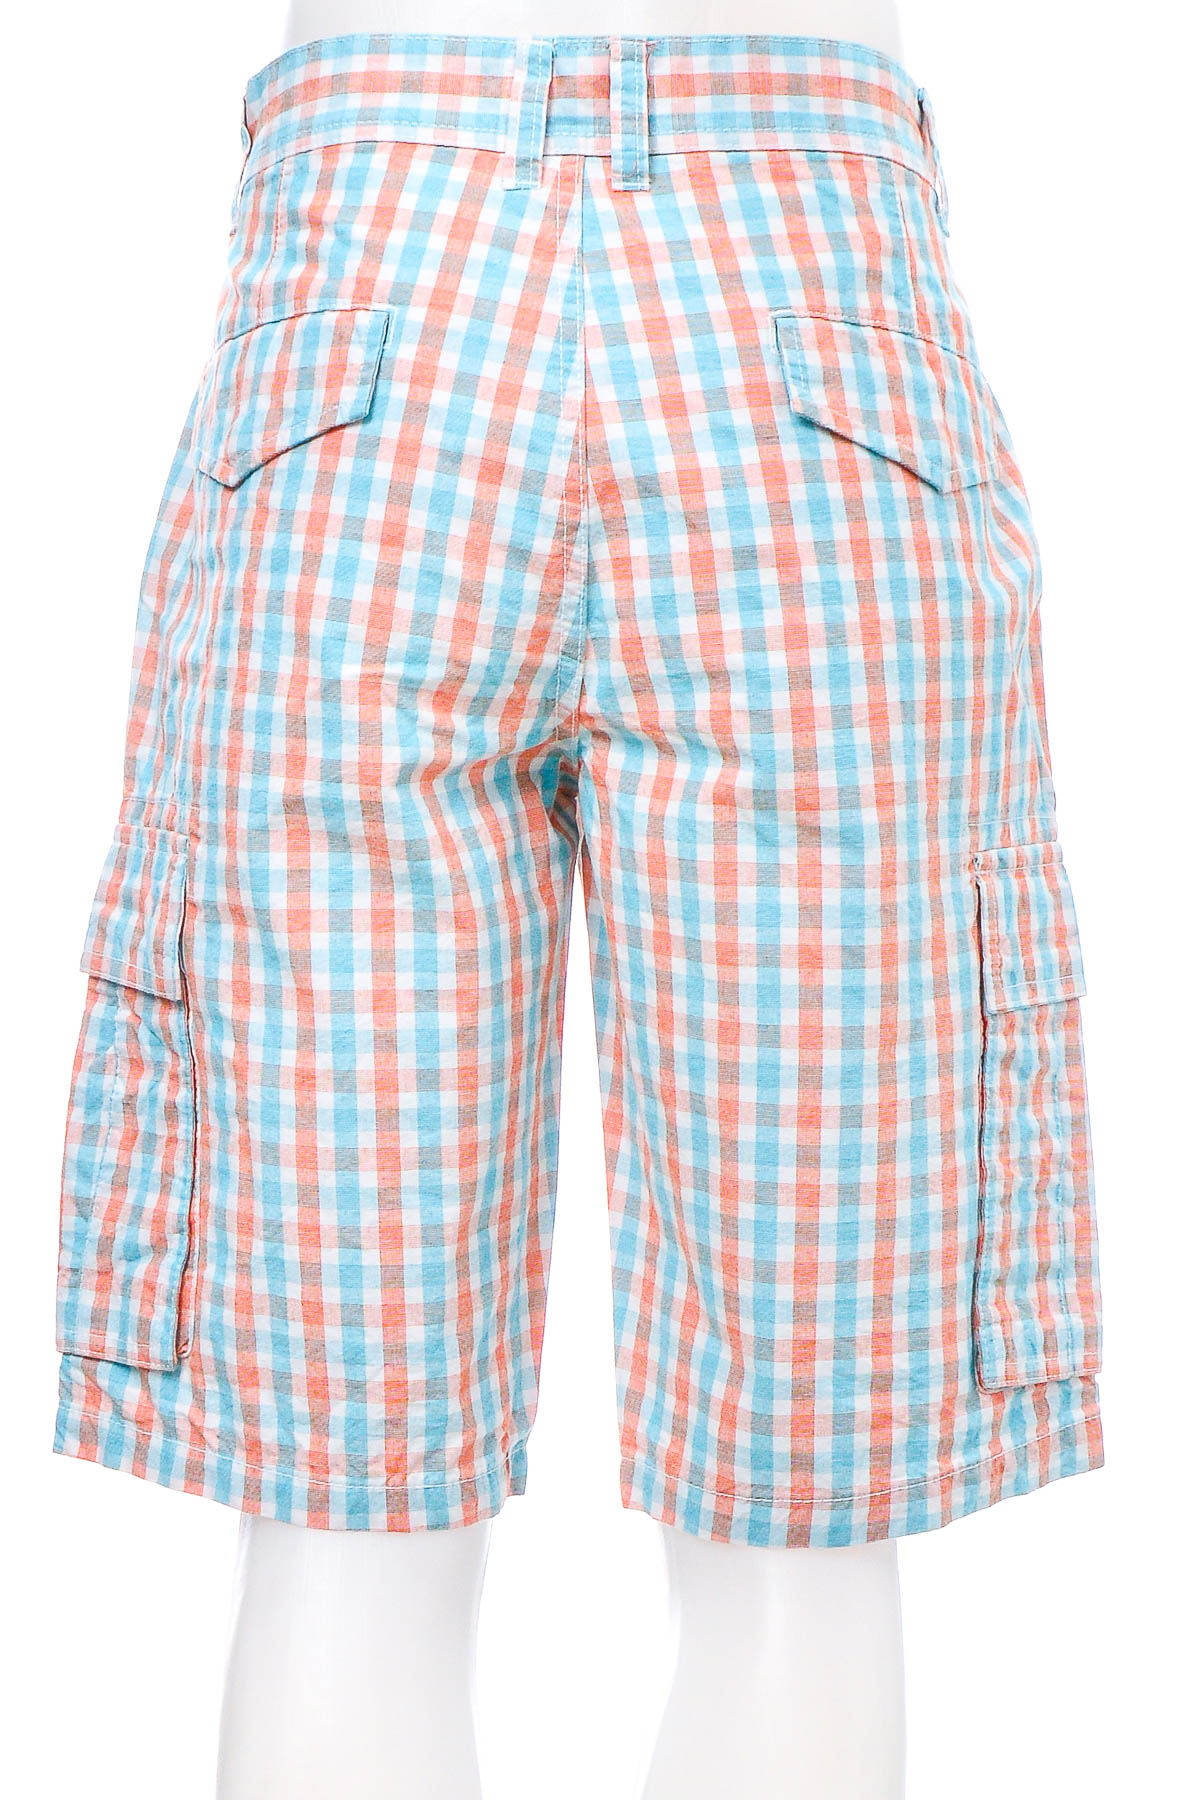 Men's shorts - Watsons - 1